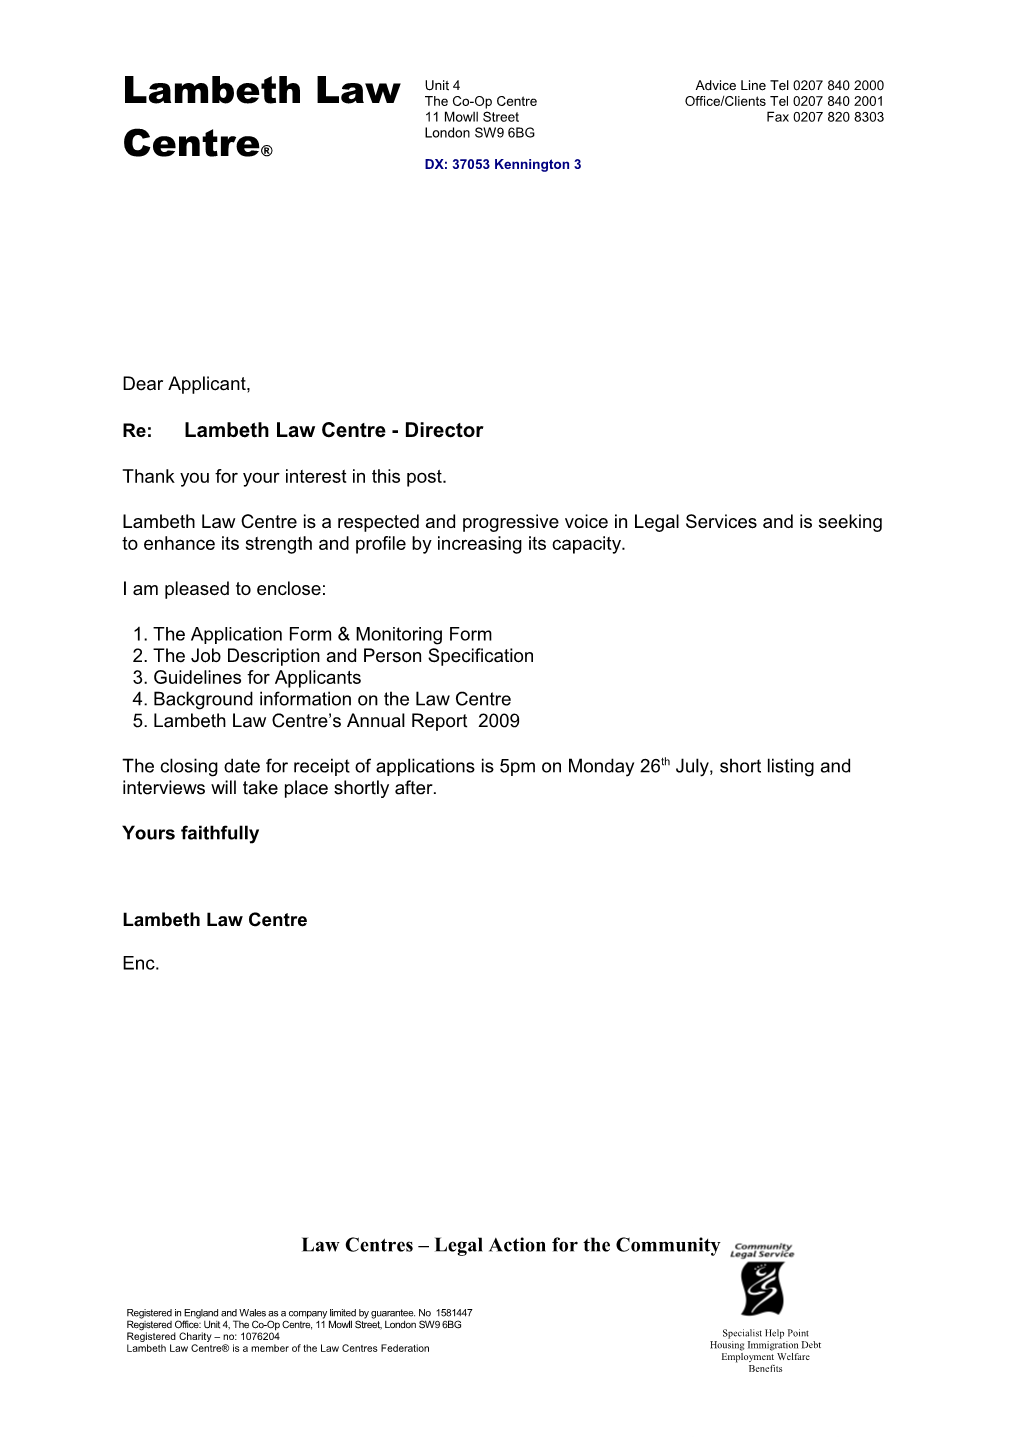 Re:Lambeth Law Centre - Director